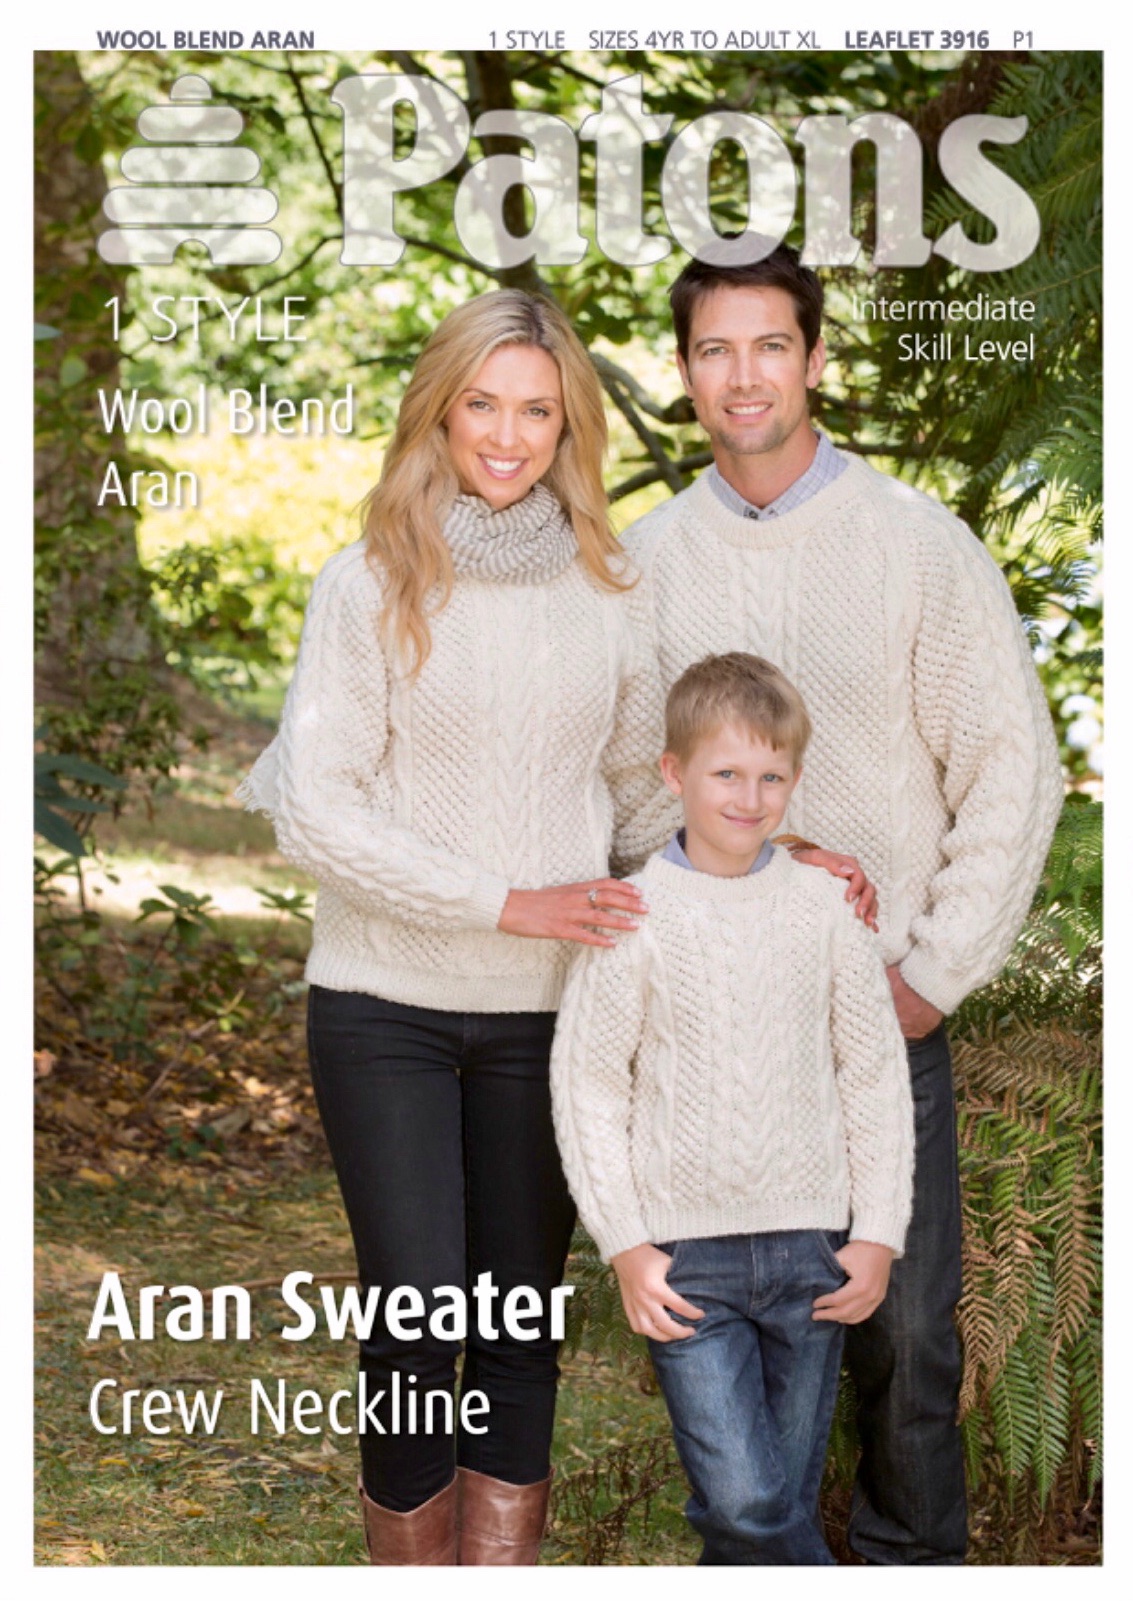 Patons Aran Sweater - Crew Neckline. 1 Style in Wool Blend Aran. Leaflet 39